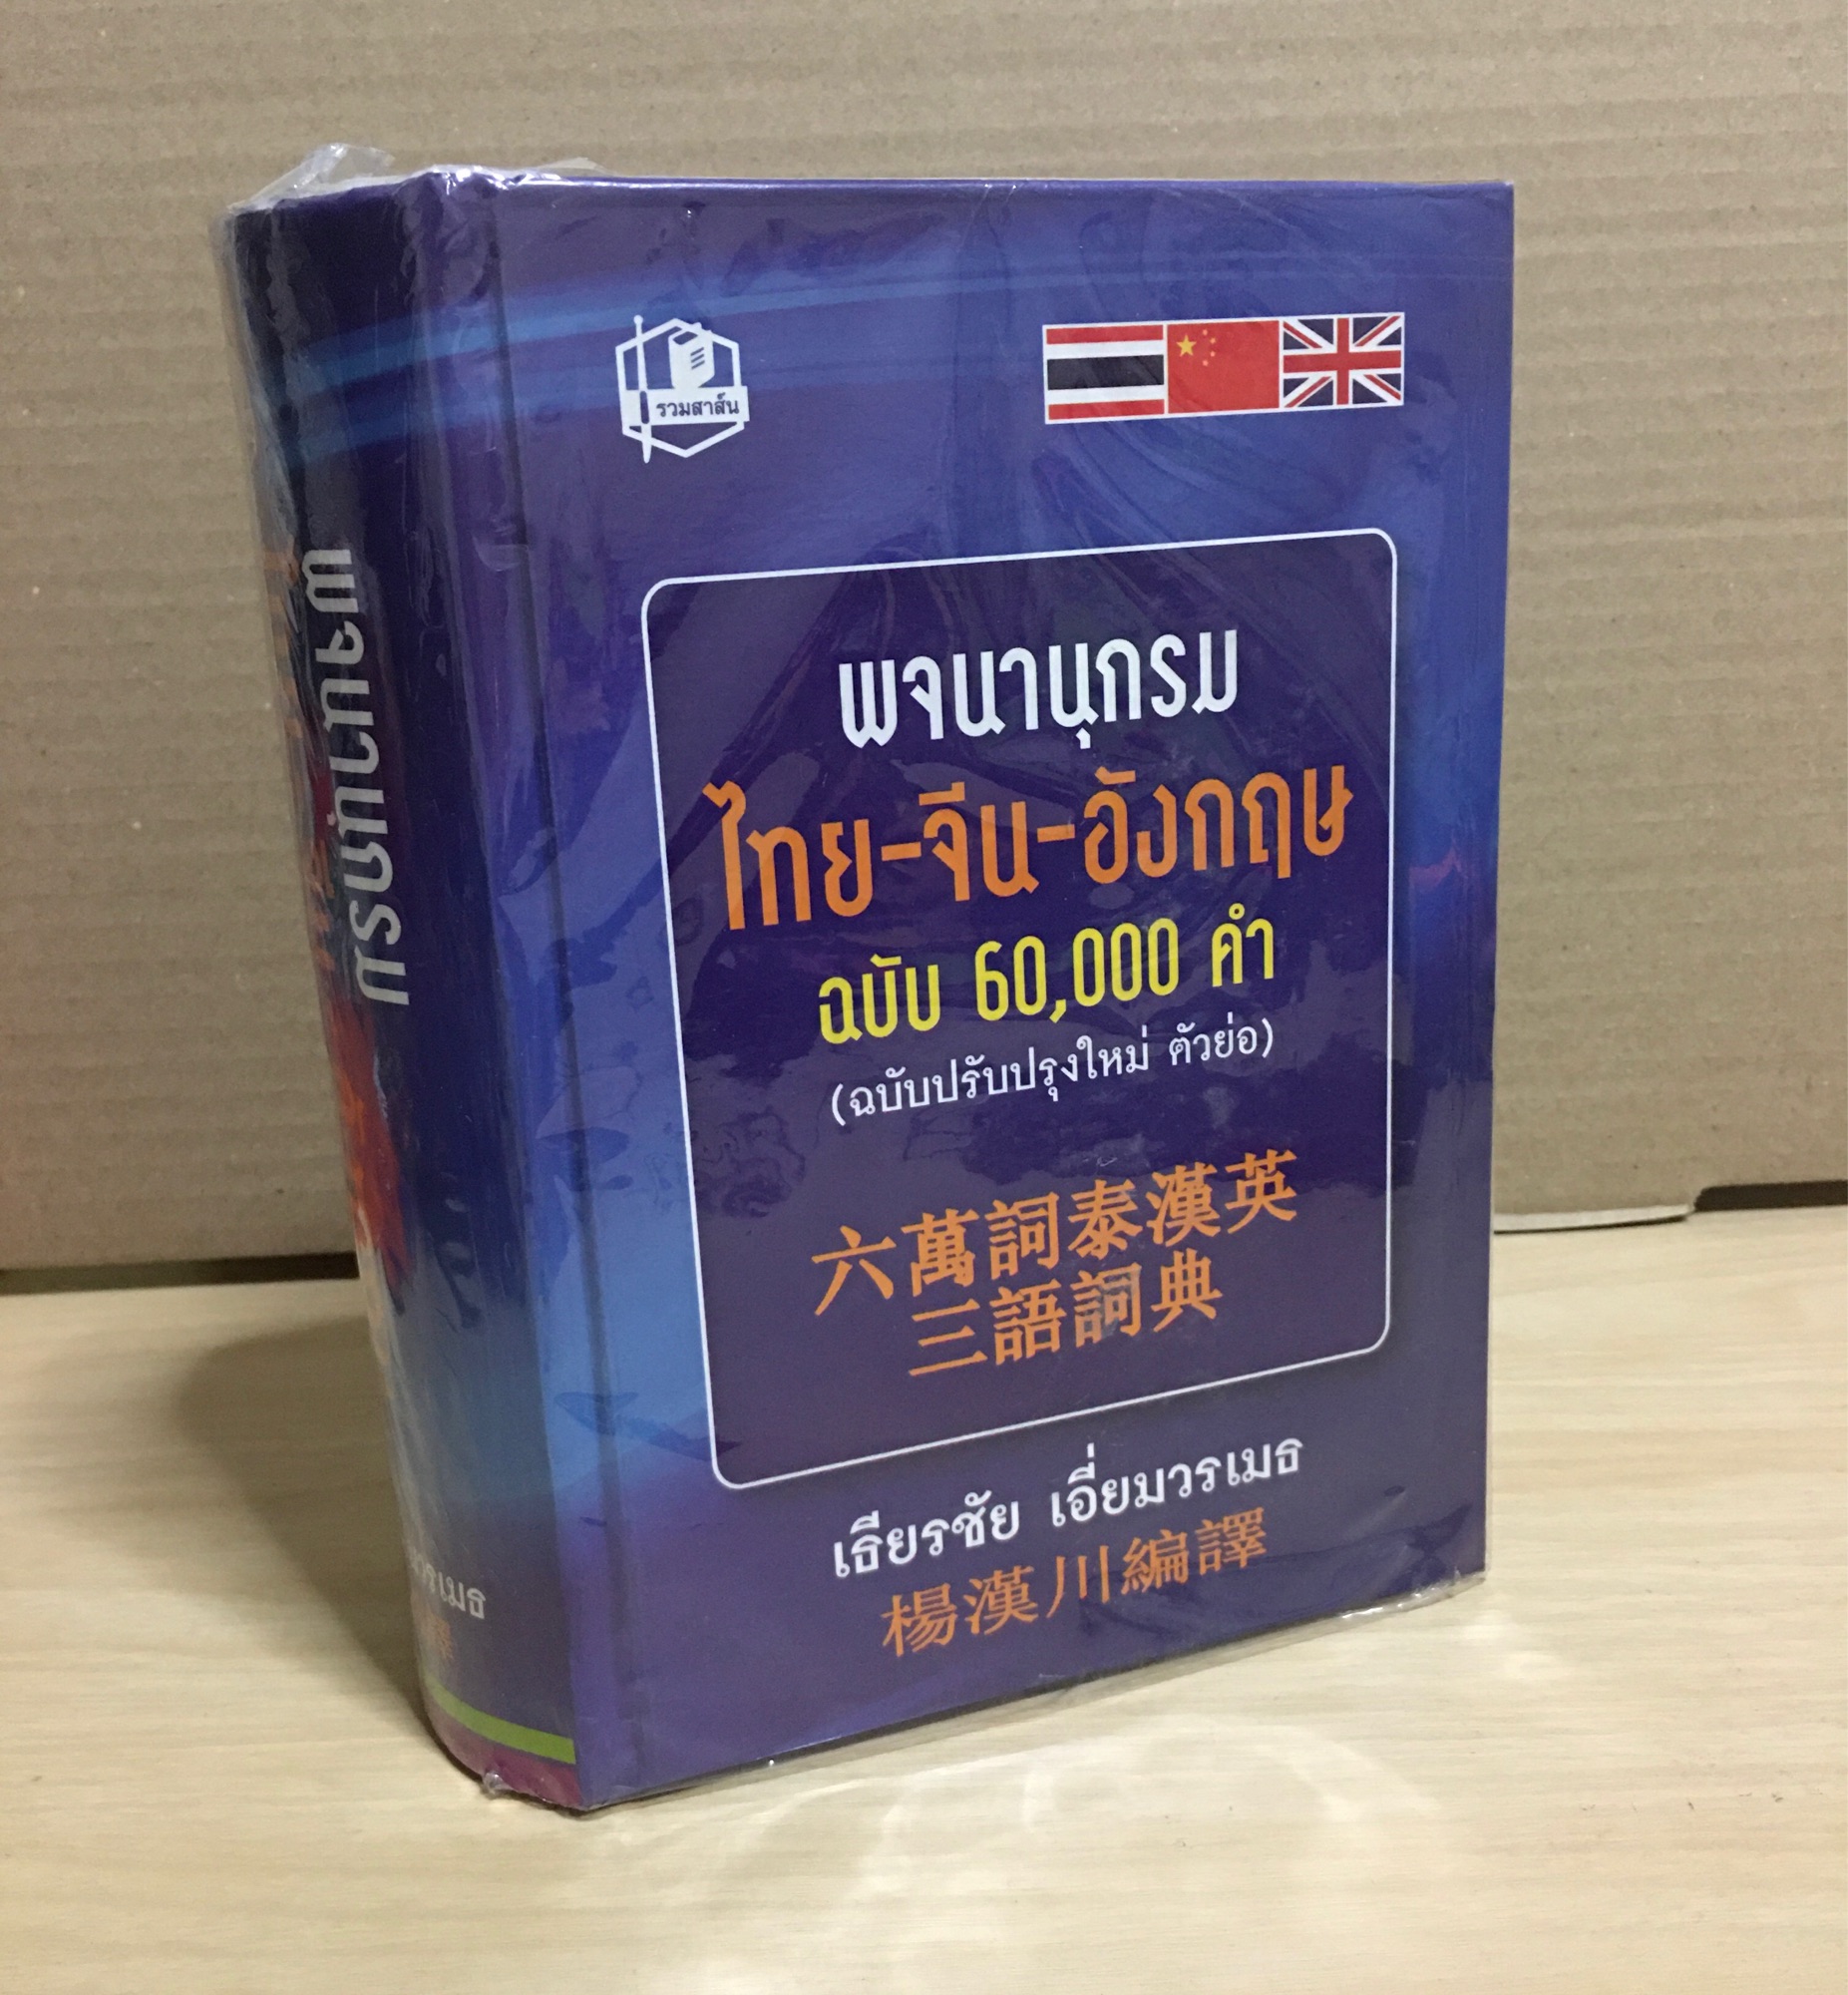 พจนานุกรมไทย-จีน-อังกฤษ 3 ภาษา ฉบับ 60,000 คำ (ปกแข็ง) : เธียรชัย เอี่ยมวรเมธ